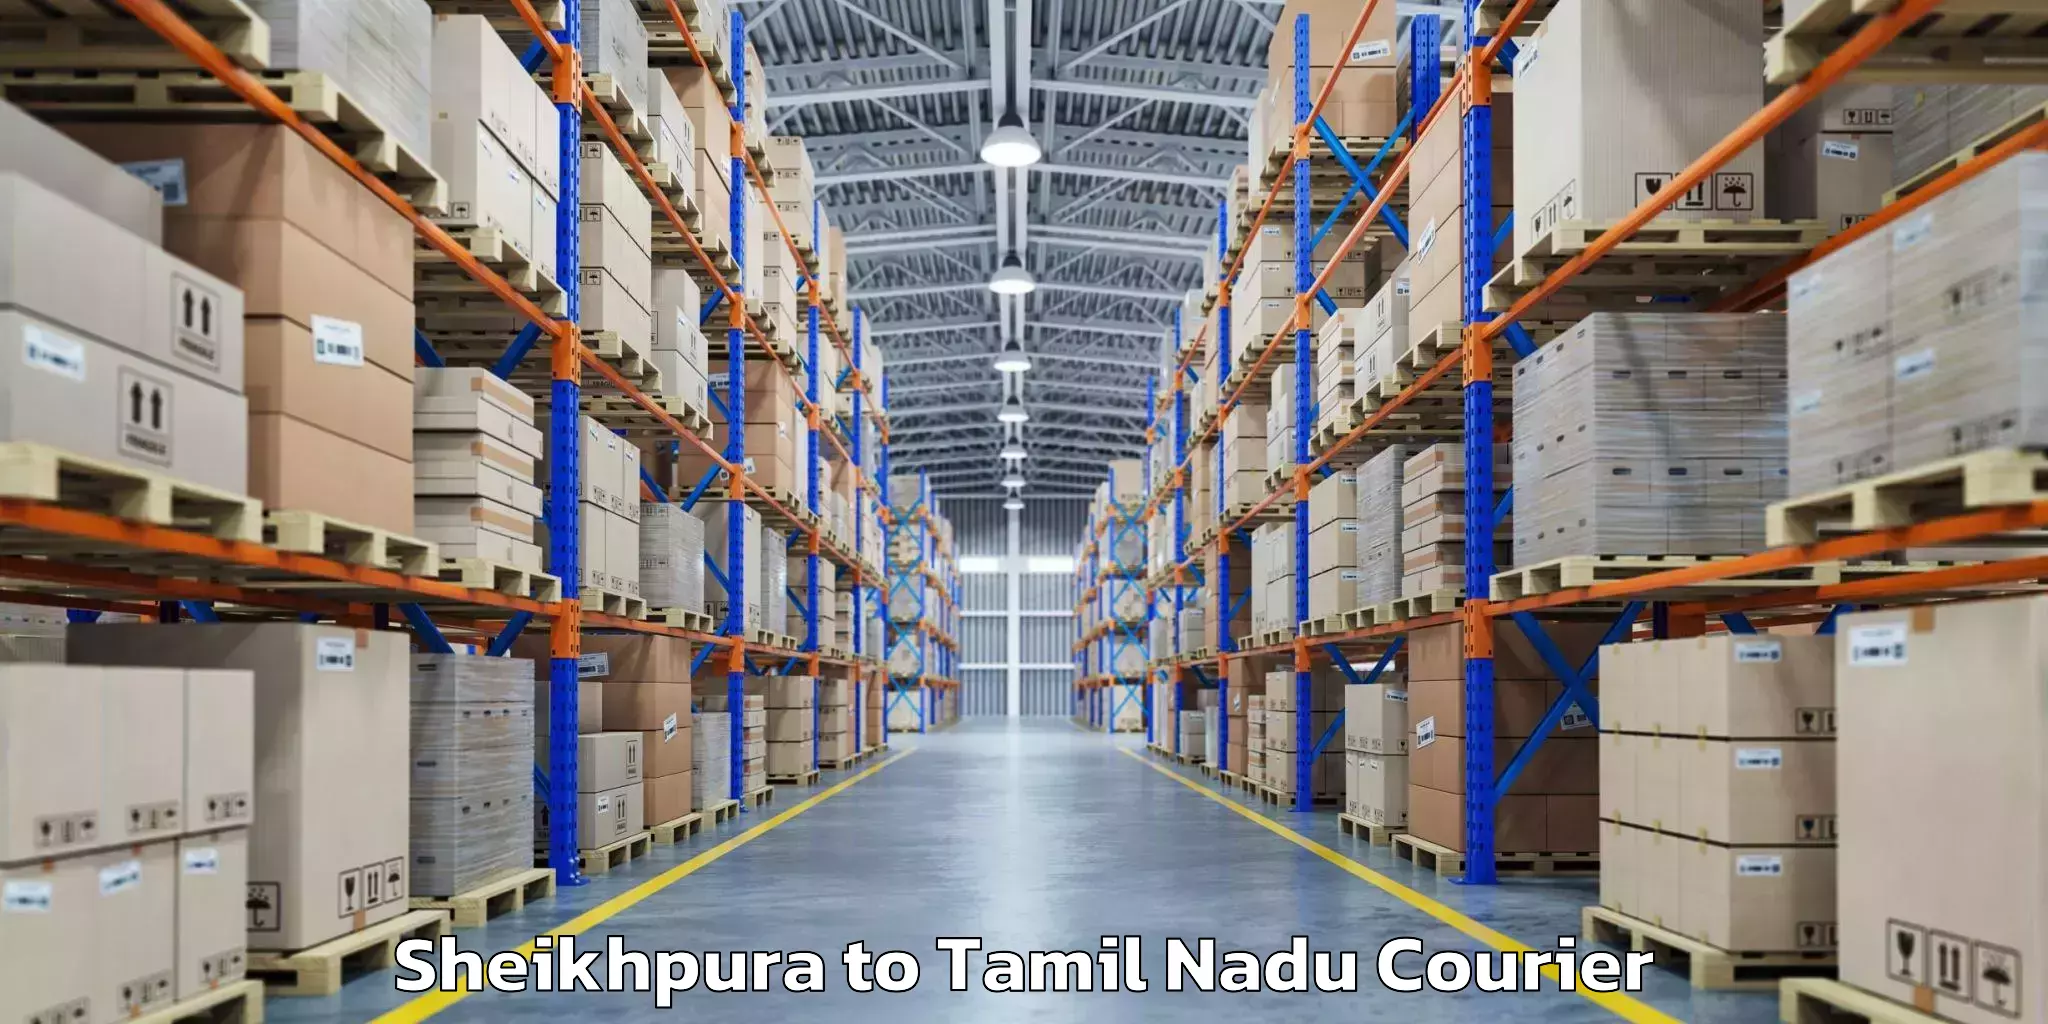 Luggage shipping specialists Sheikhpura to Tamil Nadu